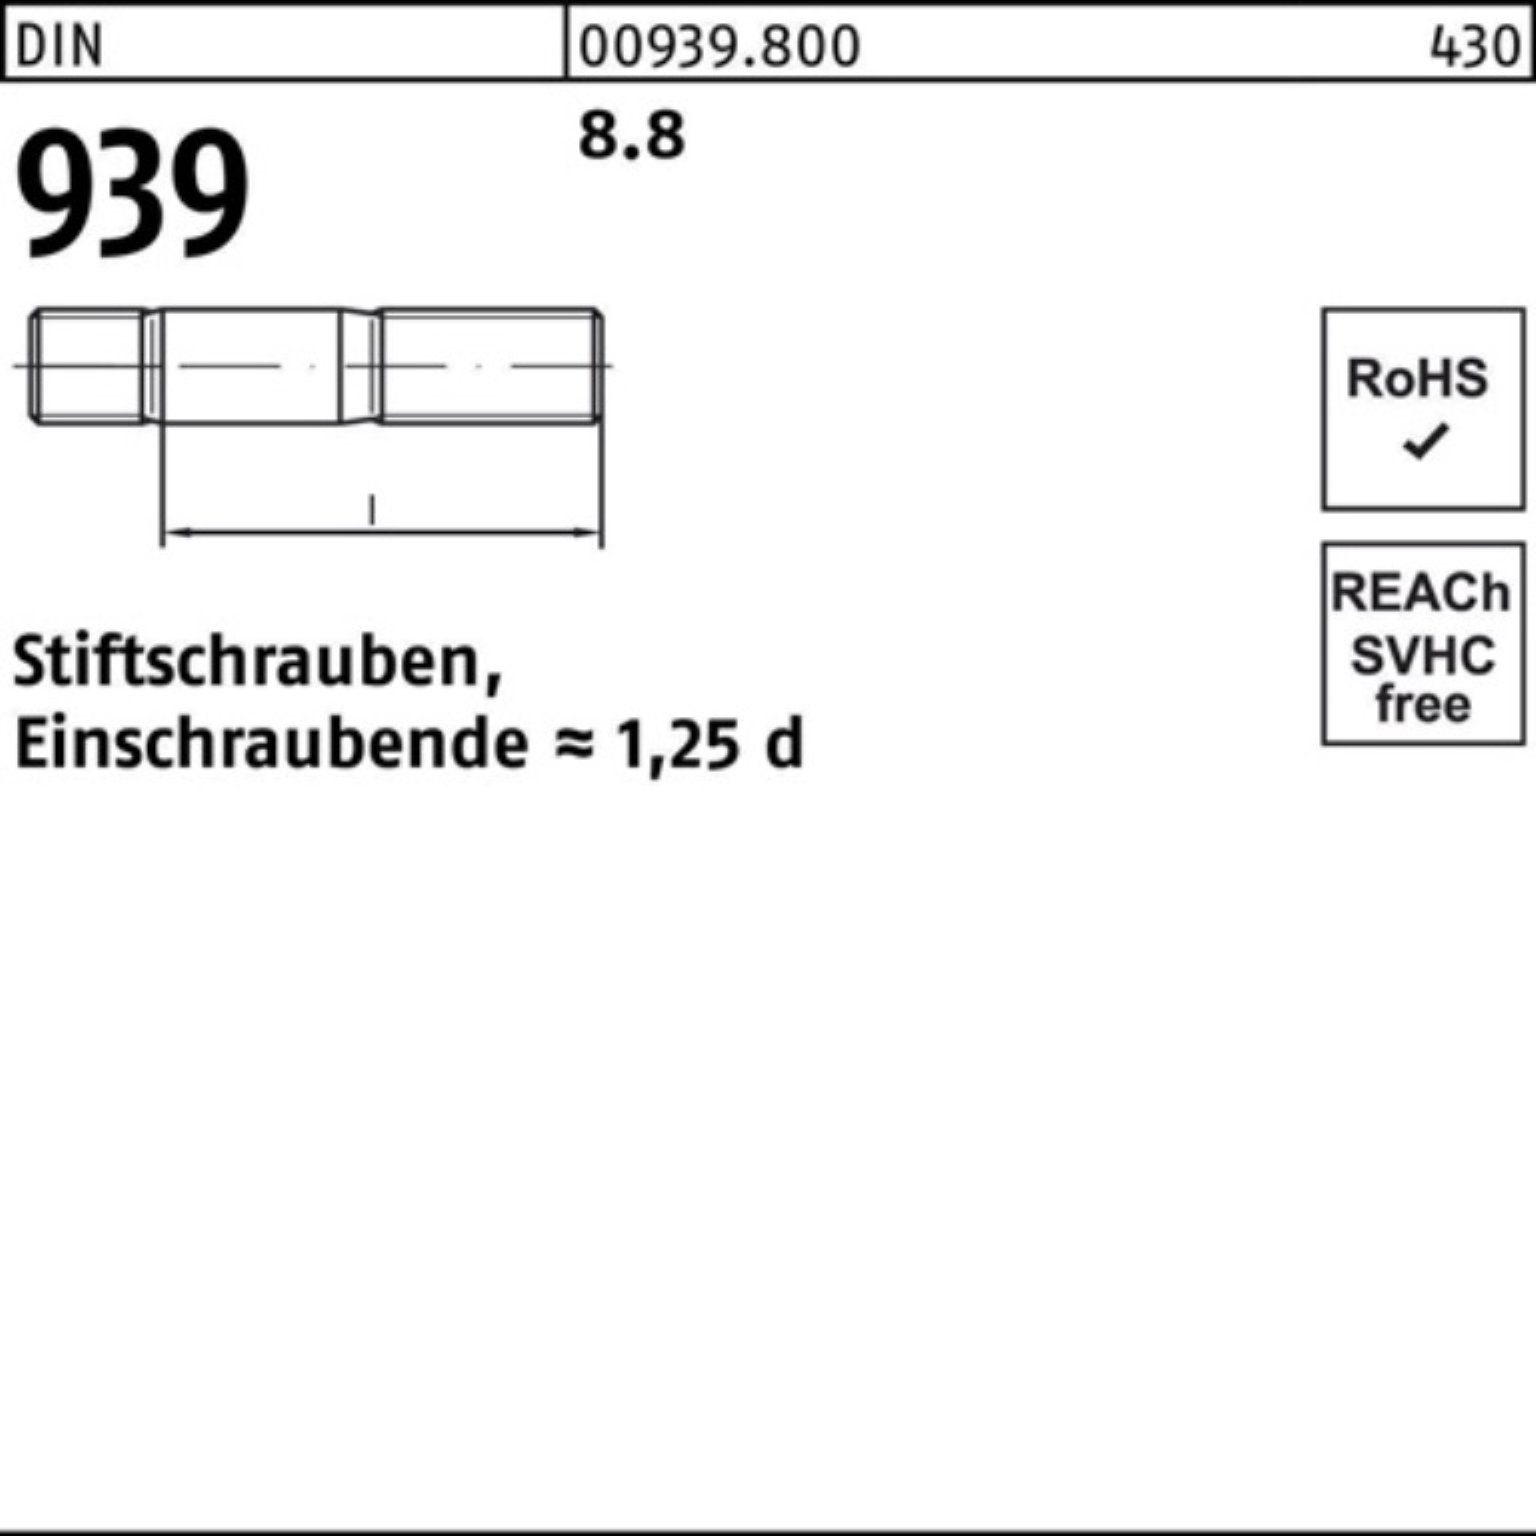 Reyher Stiftschraube 100er Pack M8x St 30 Stiftschraube 8.8 DIN 50 Einschraubende=1,25d 939